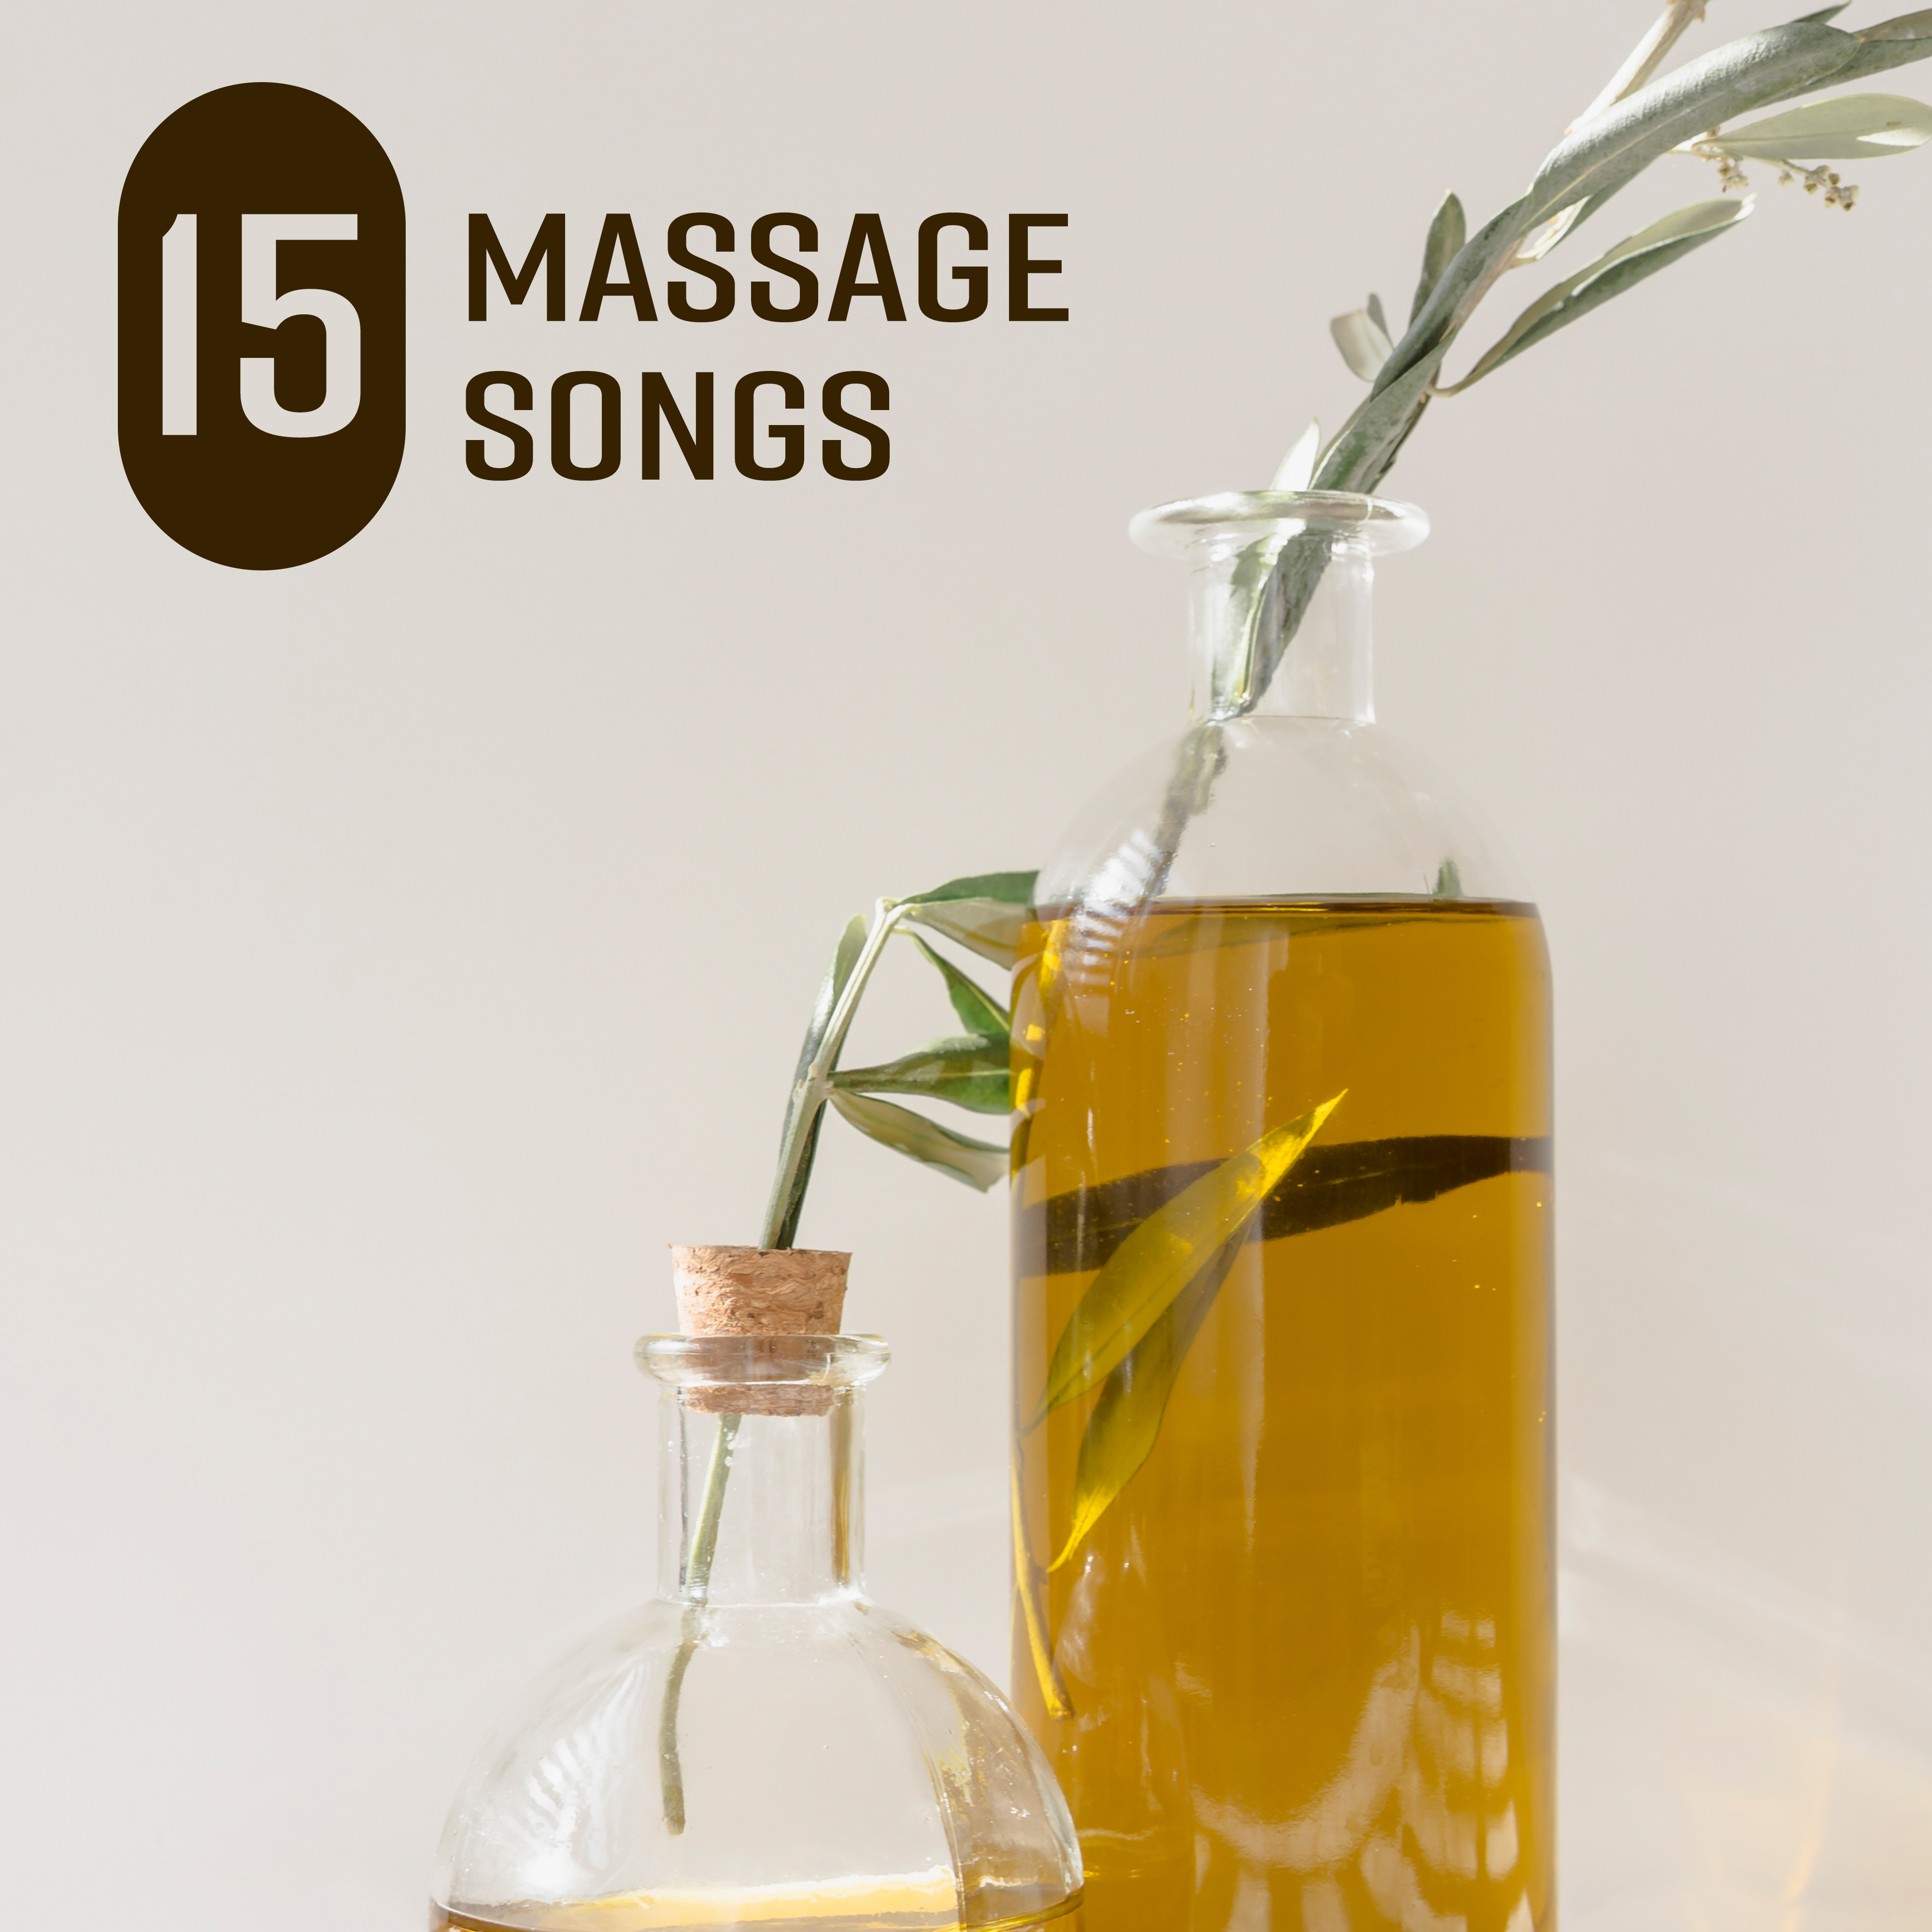 15 Massage Songs